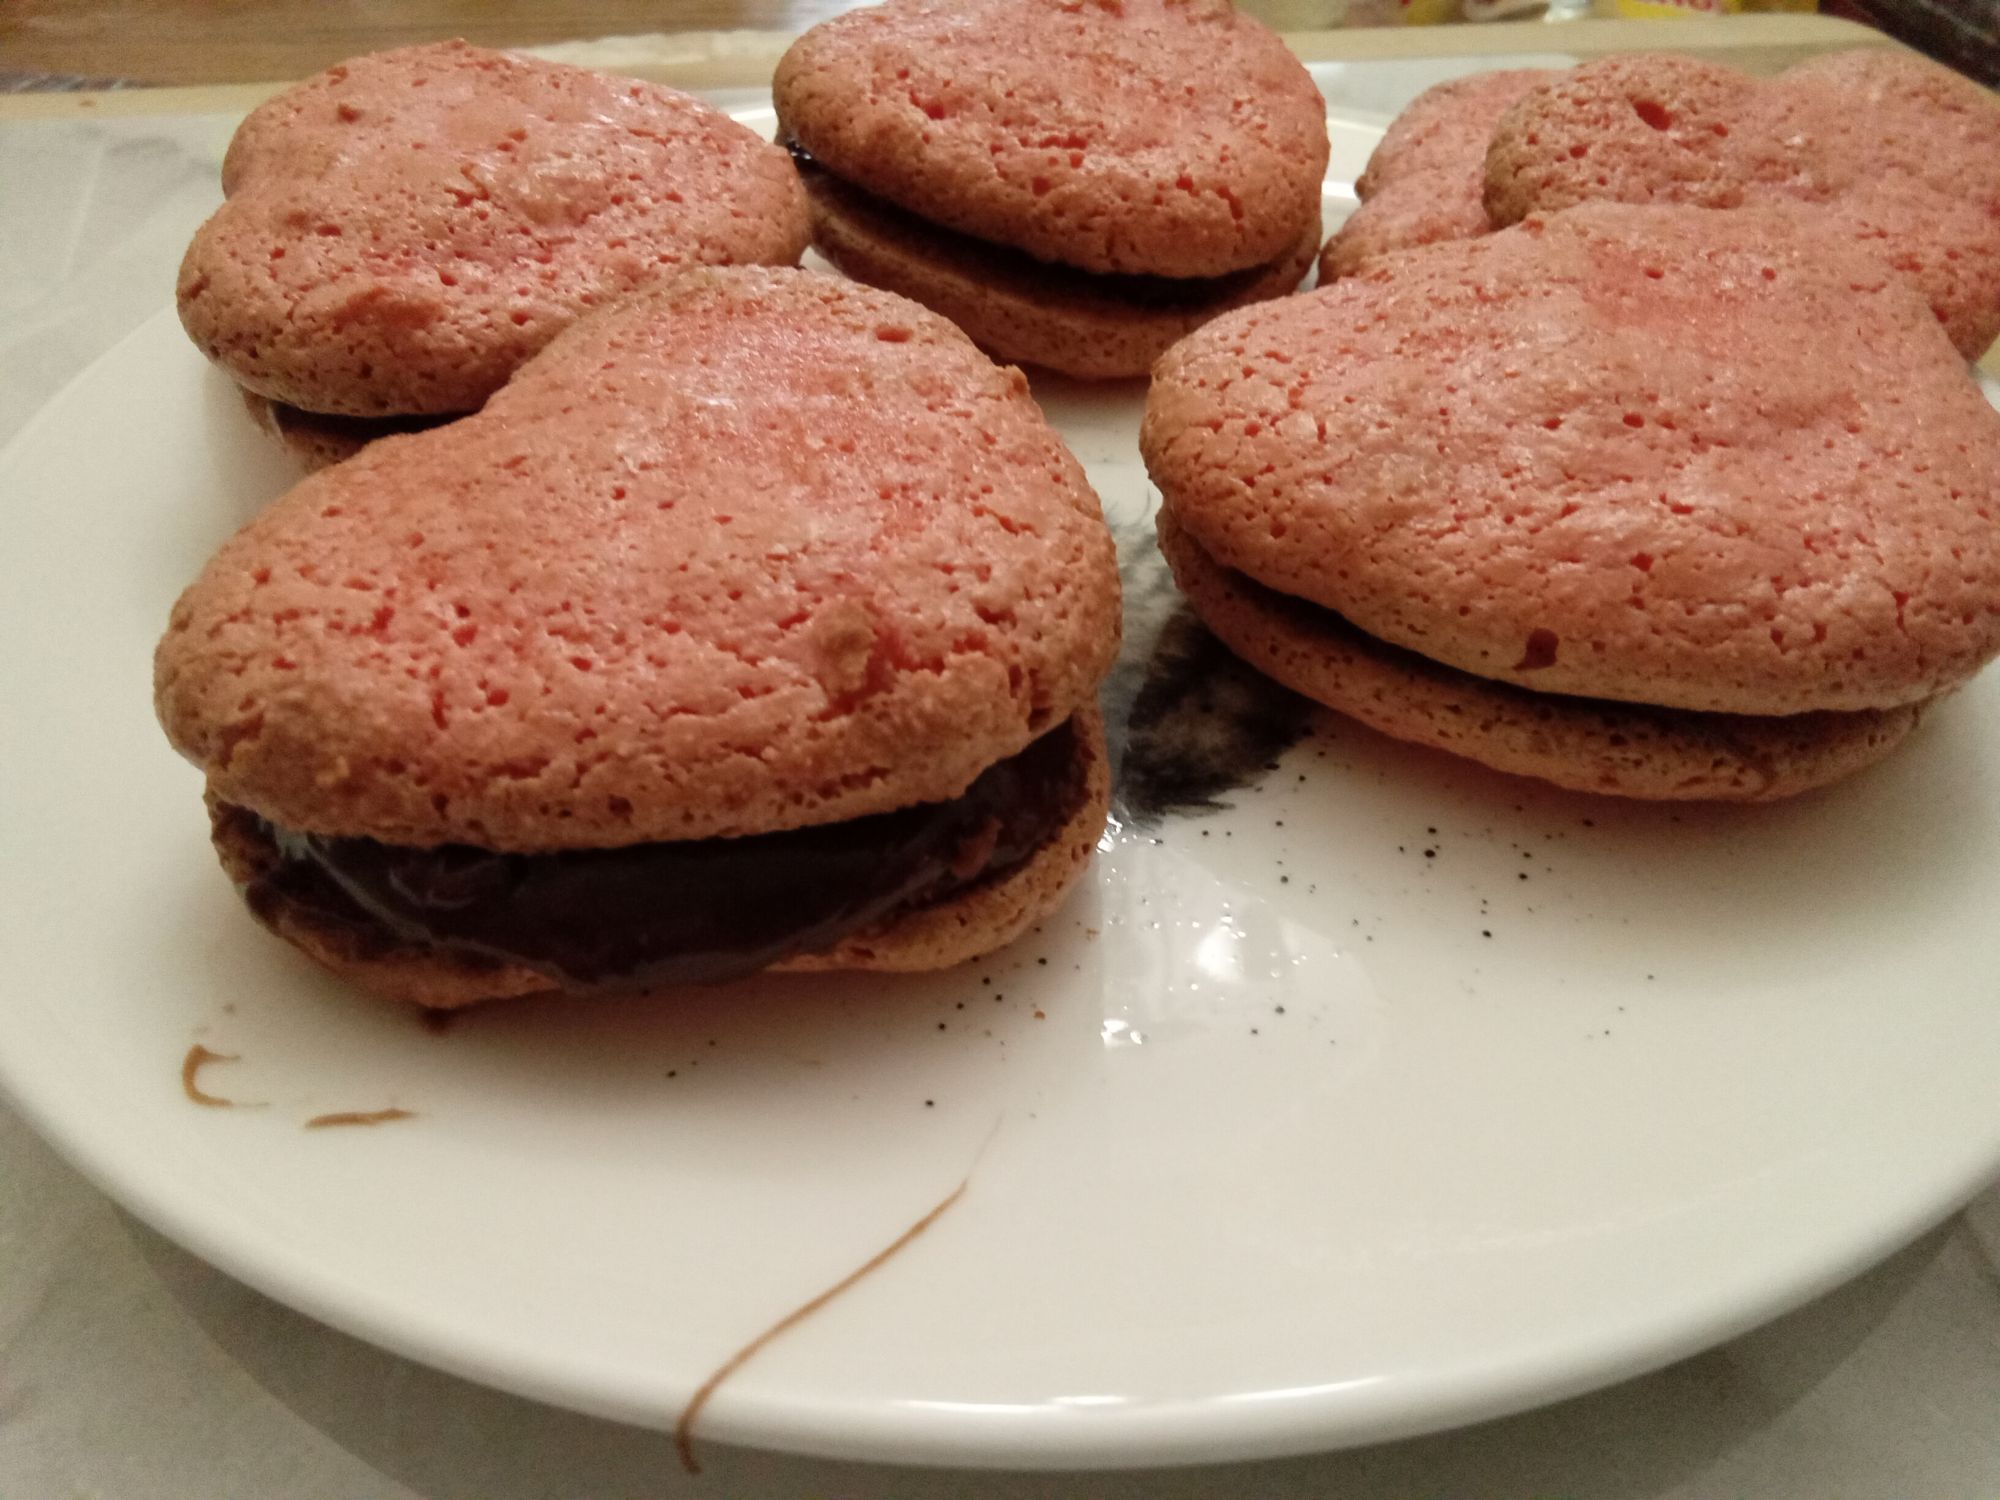 Petite assiette vue de profil, remplis de macarons parisien rosés en forme de coeur avec caramel au chocolat au centre.